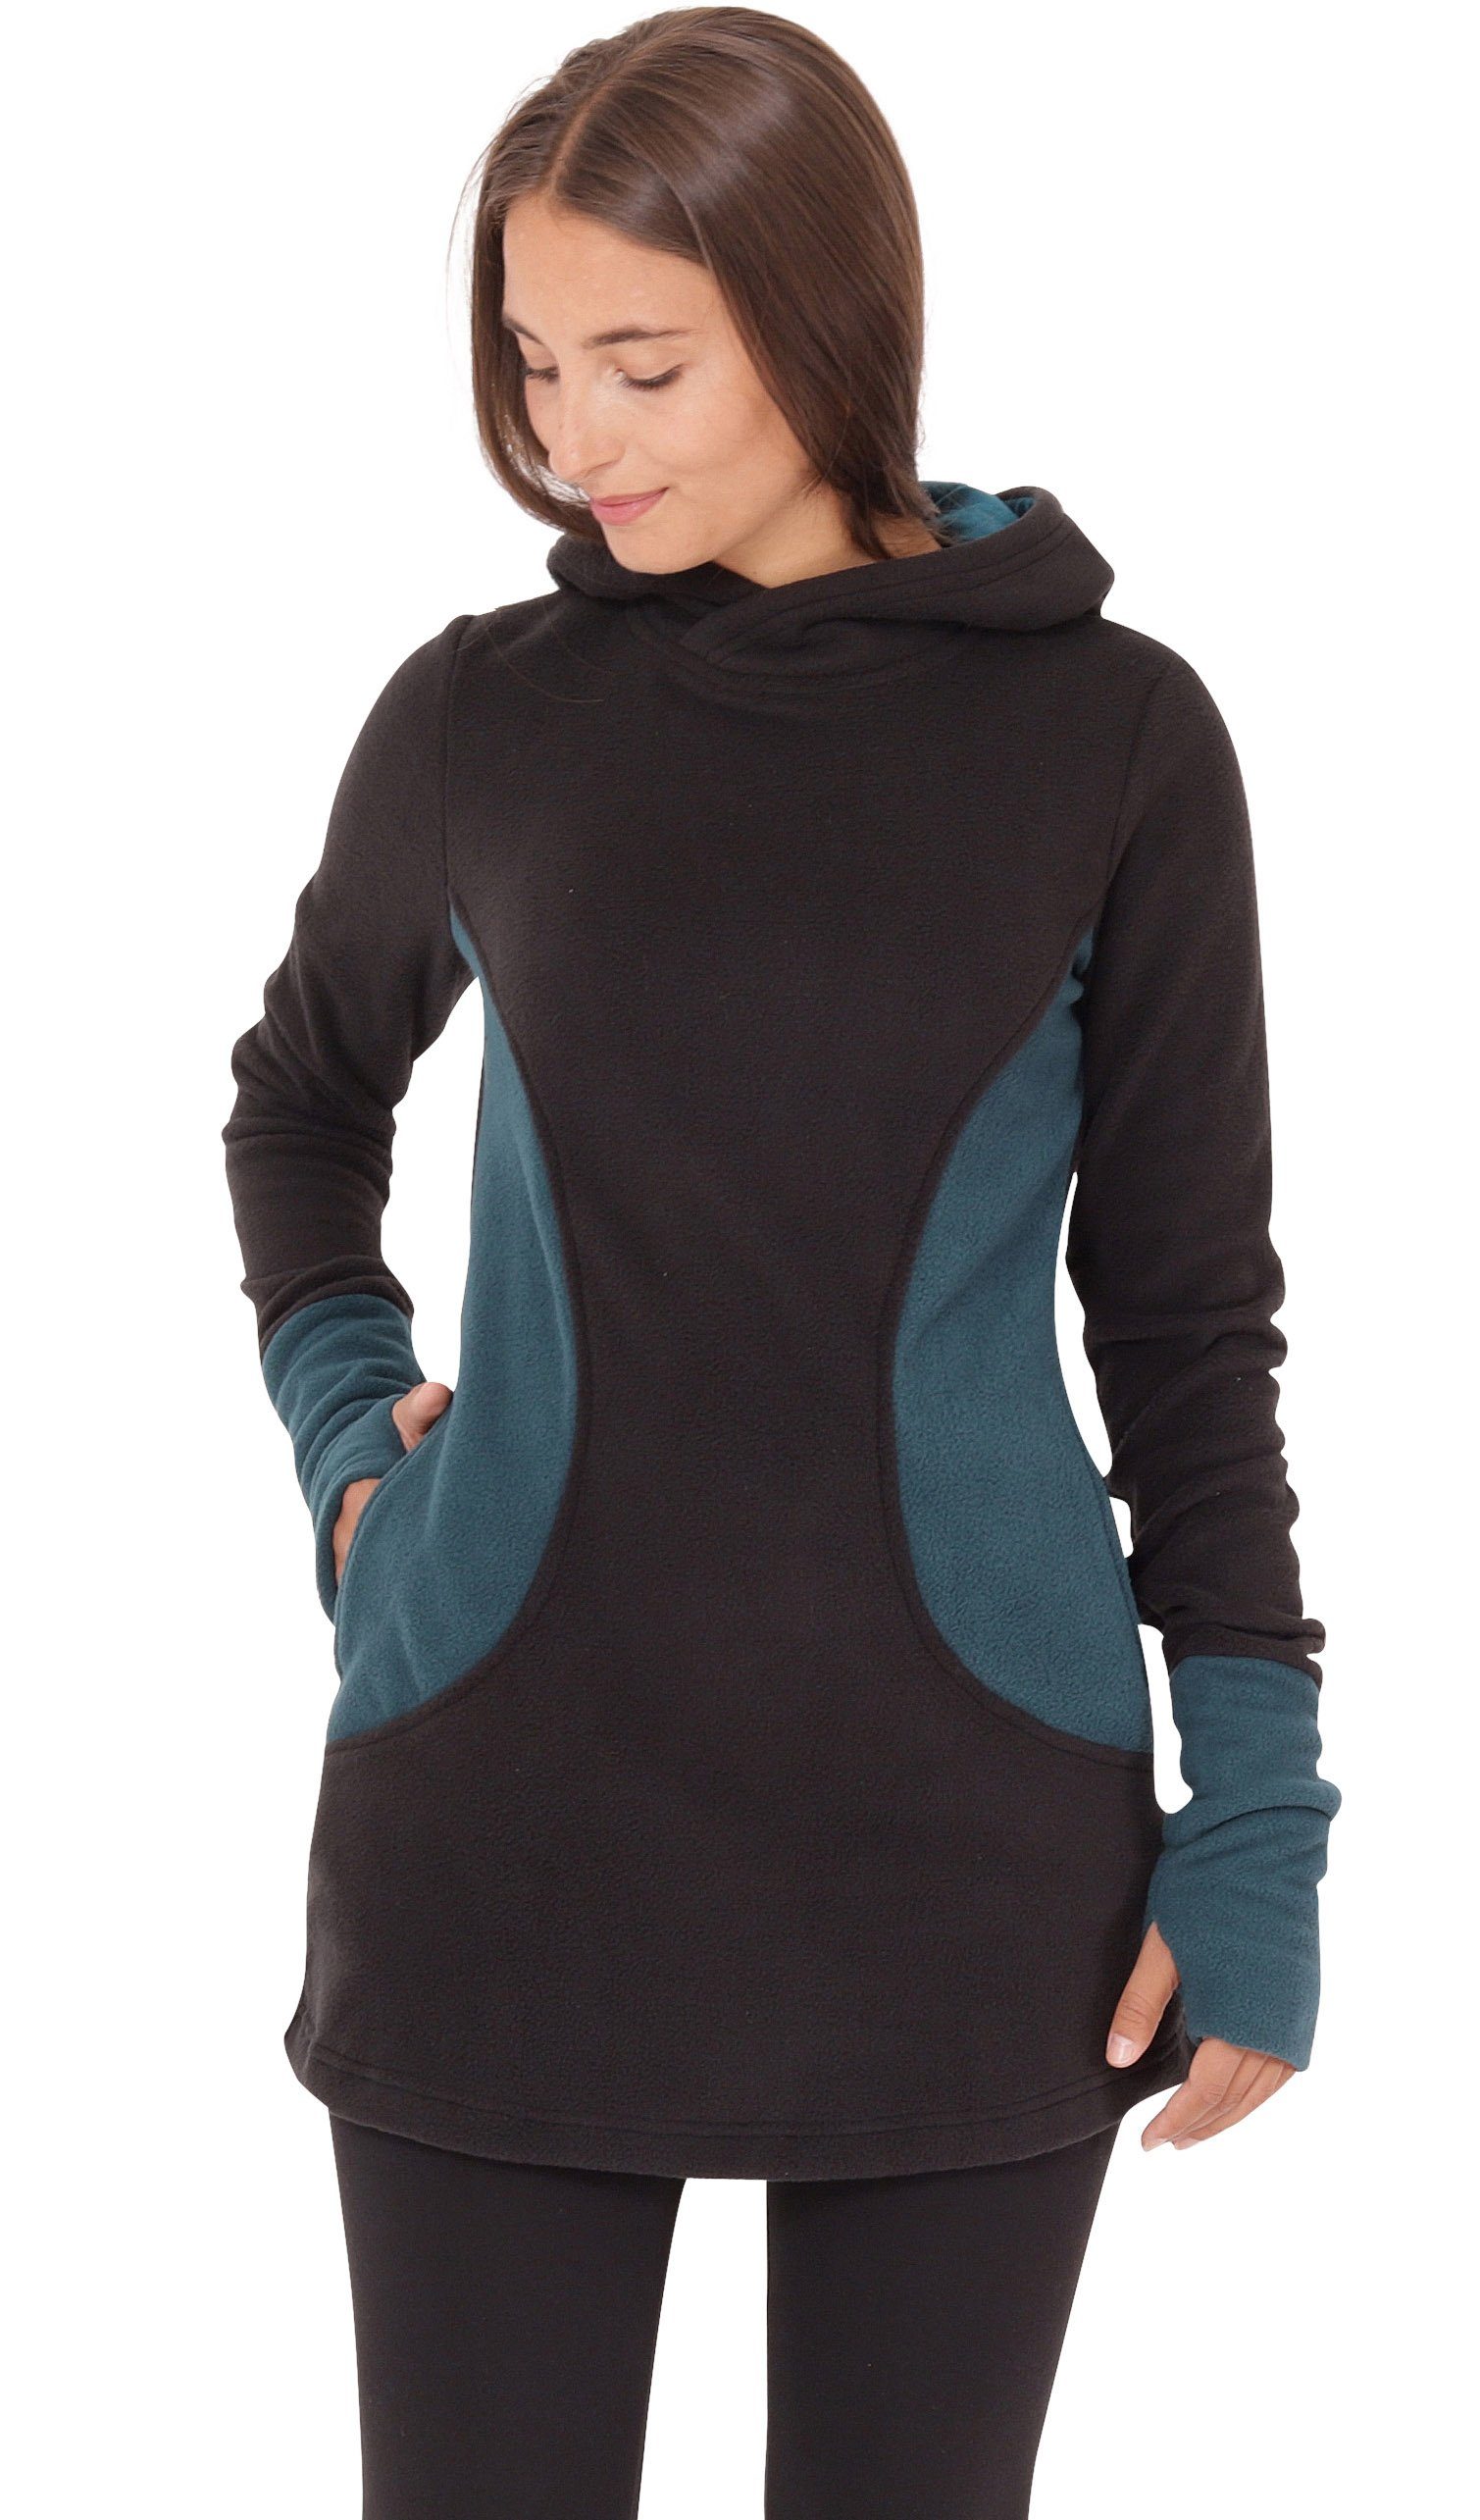 PUREWONDER Kapuzenpullover Fleece Kleid und Pullover dr12 mit Kapuze und Taschen Blau